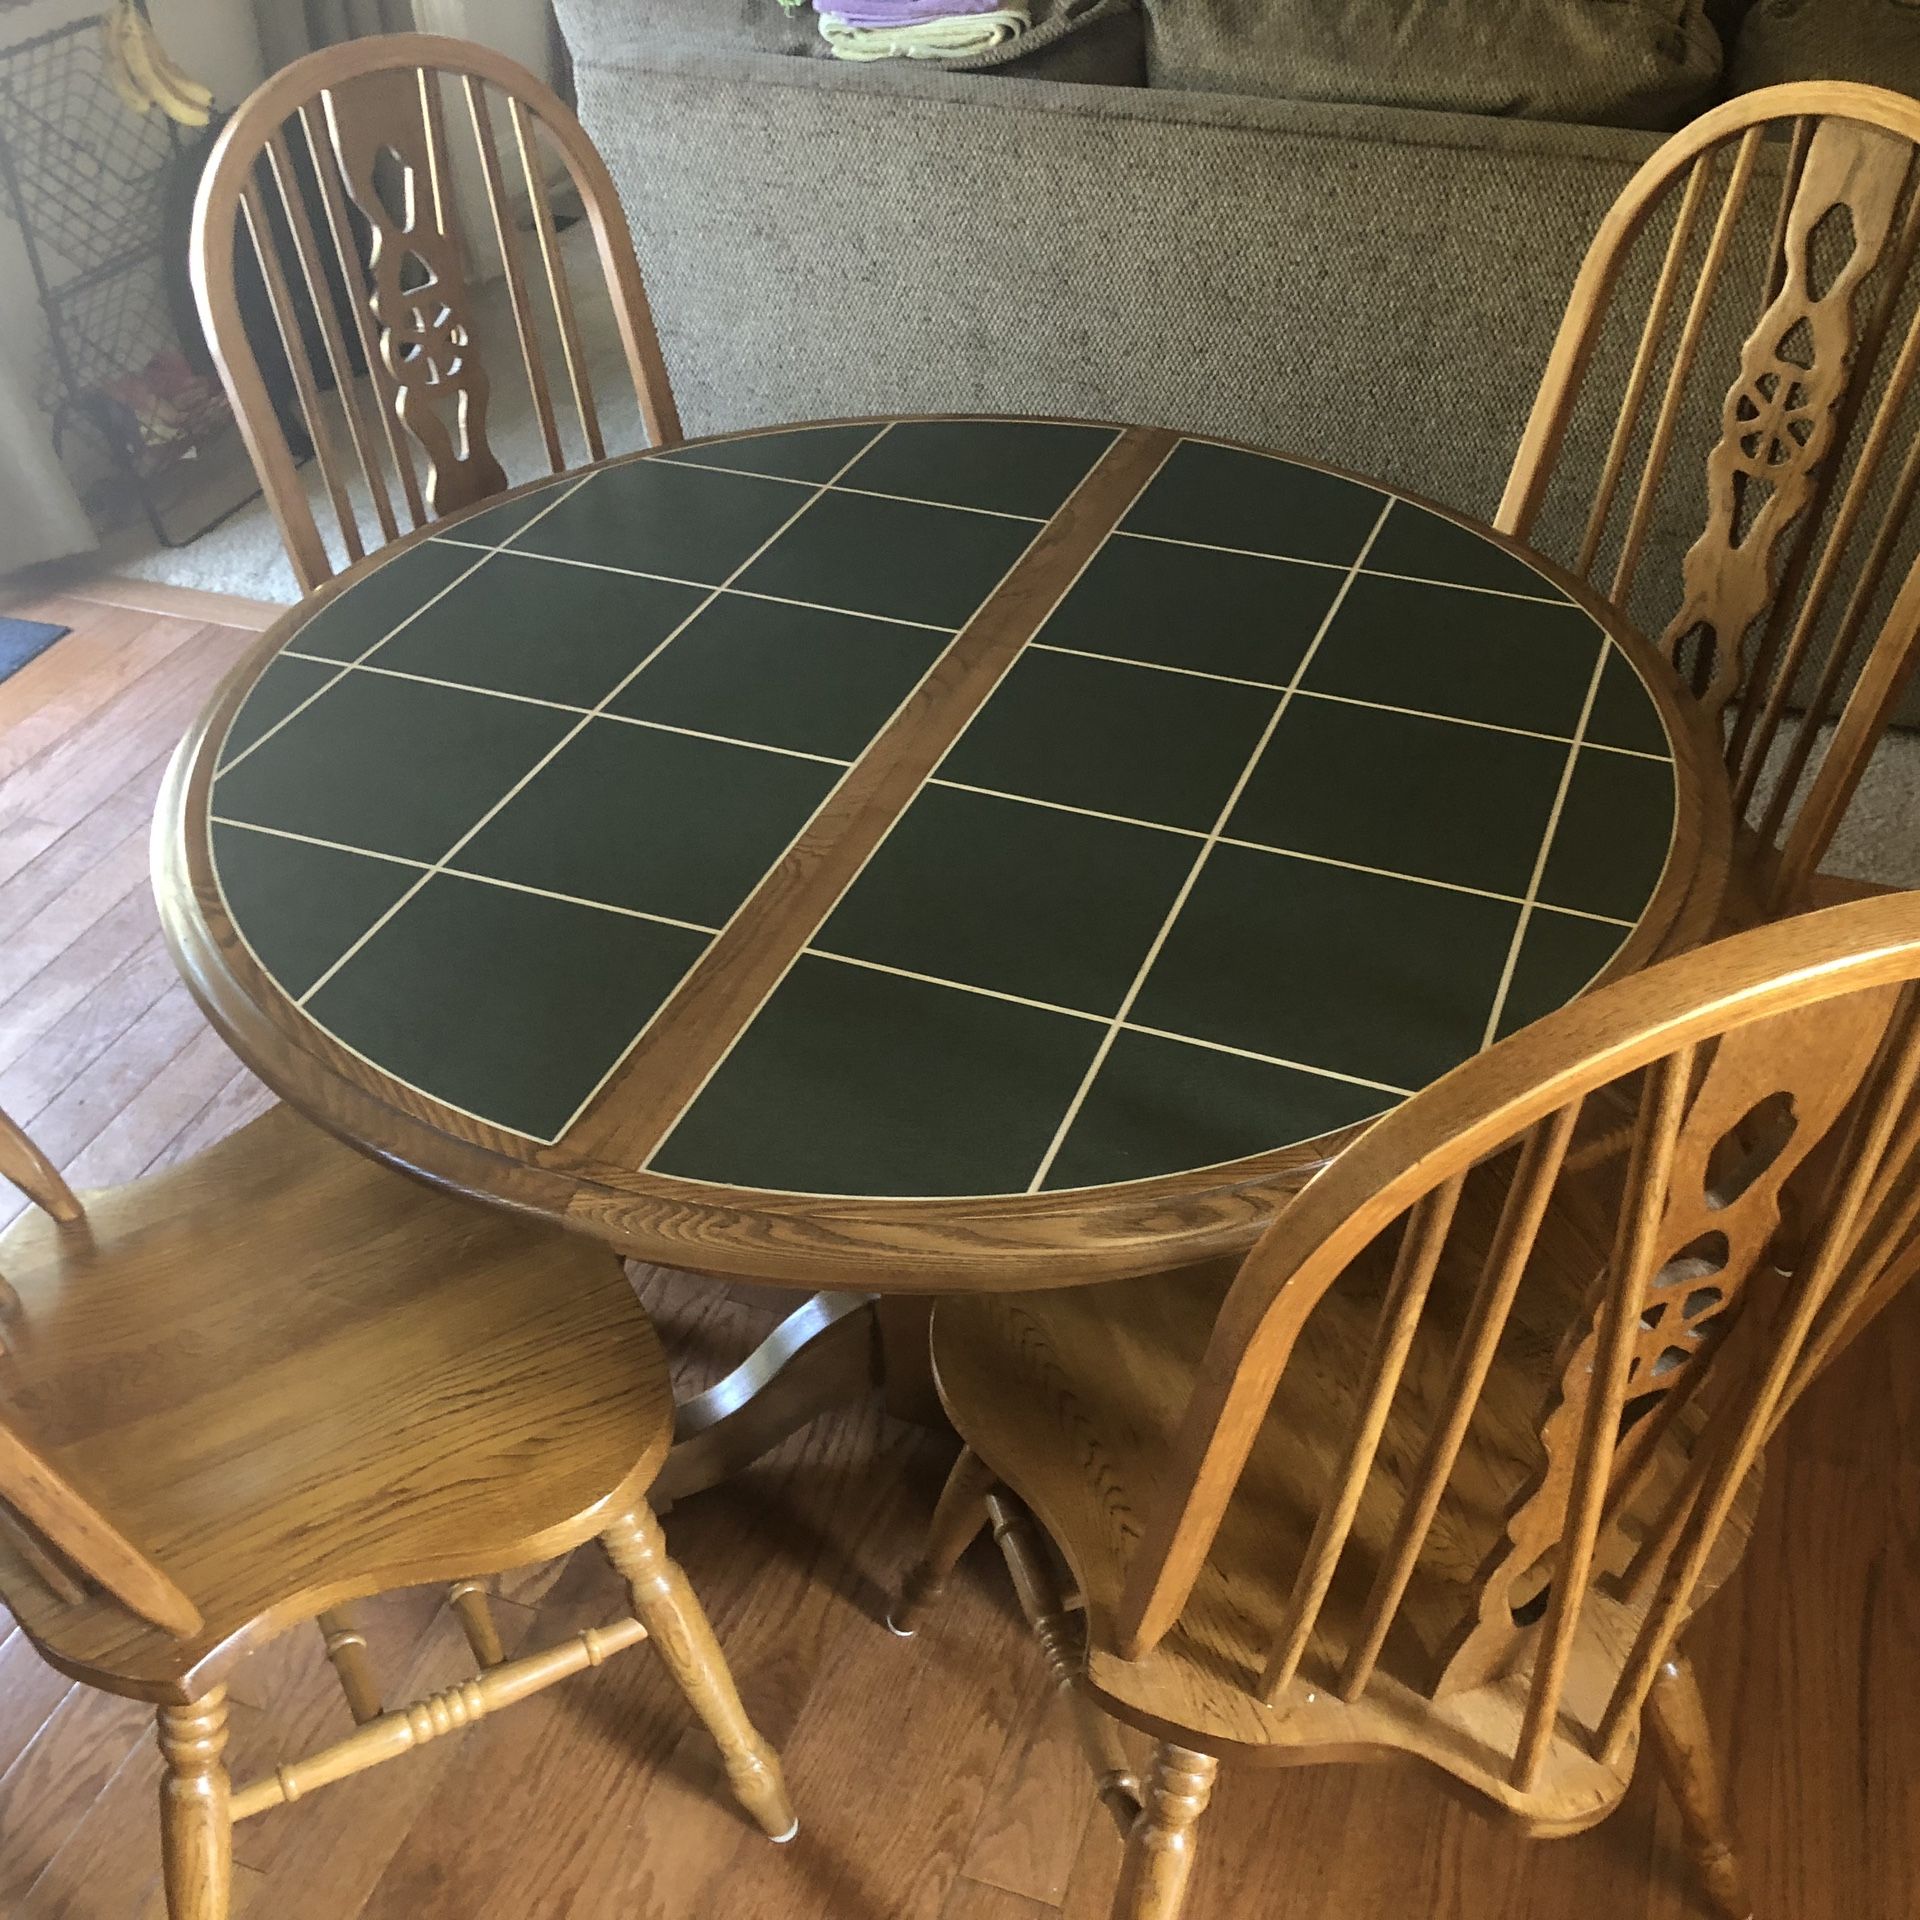 Tiled breakfast table